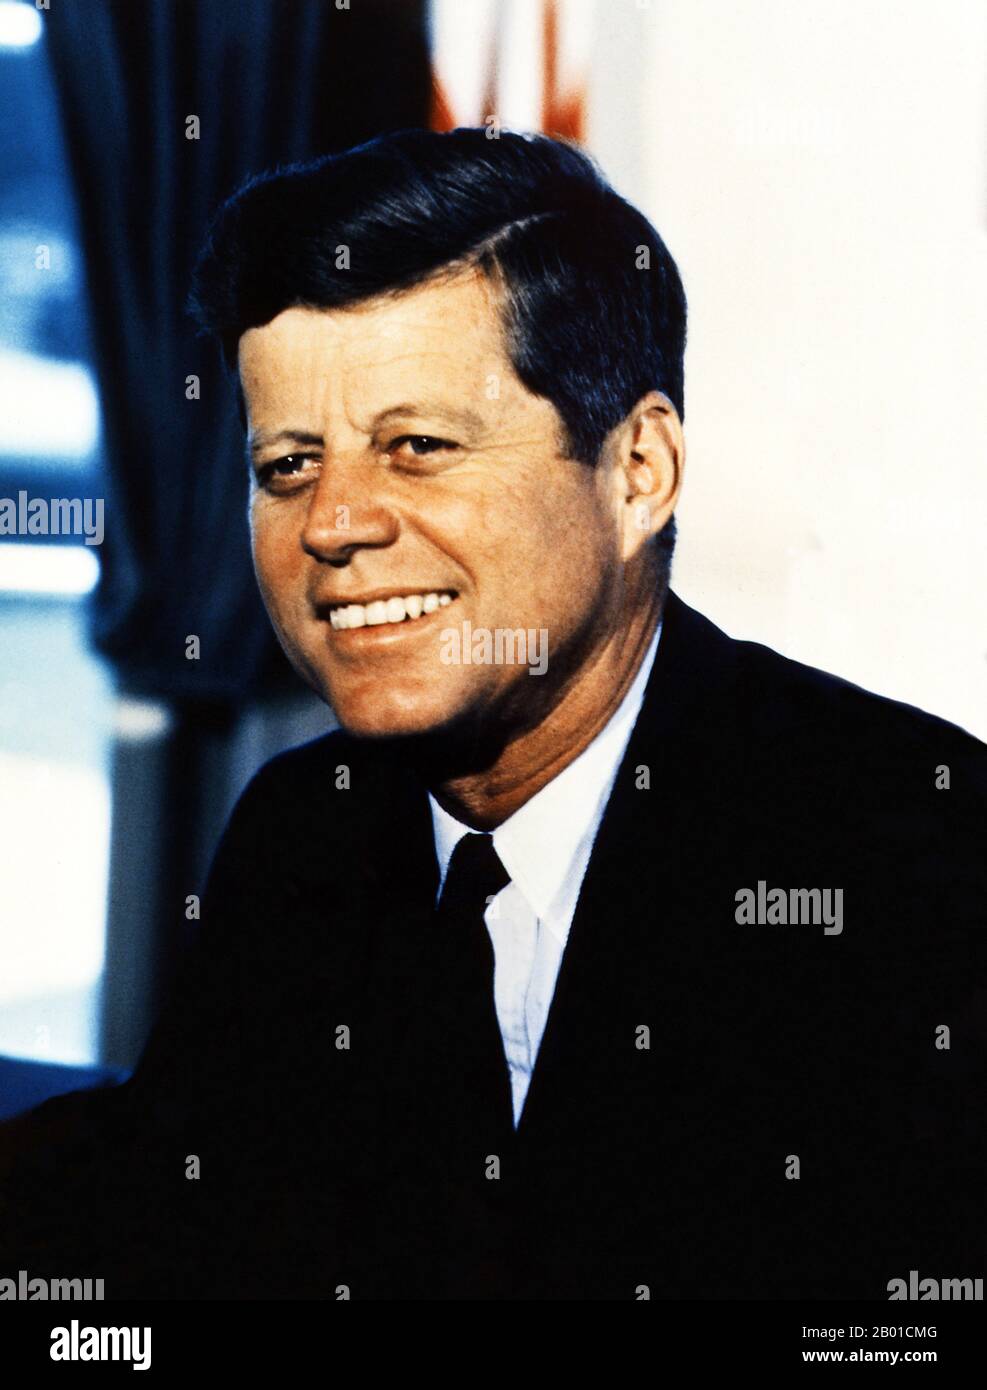 USA: John Fitzgerald 'Jack' Kennedy (29. Mai 1917 - 22. November 1963), oft bezeichnet durch seine Initialen JFK, 35. Präsident der Vereinigten Staaten (1961-1963). Porträt von Cecil Stoughton (1920-2008, gemeinfrei), Oval Office, Weisses Haus, 11. Juli 1963. Nach dem Militärdienst während des Zweiten Weltkriegs im Südpazifik vertrat Kennedy den Kongressbezirk von Massachusetts aus dem Jahr 11. in den USA Repräsentantenhaus von 1947 bis 1953 als Demokrat. Danach diente er in den USA Senat von 1953 bis 1960. Stockfoto